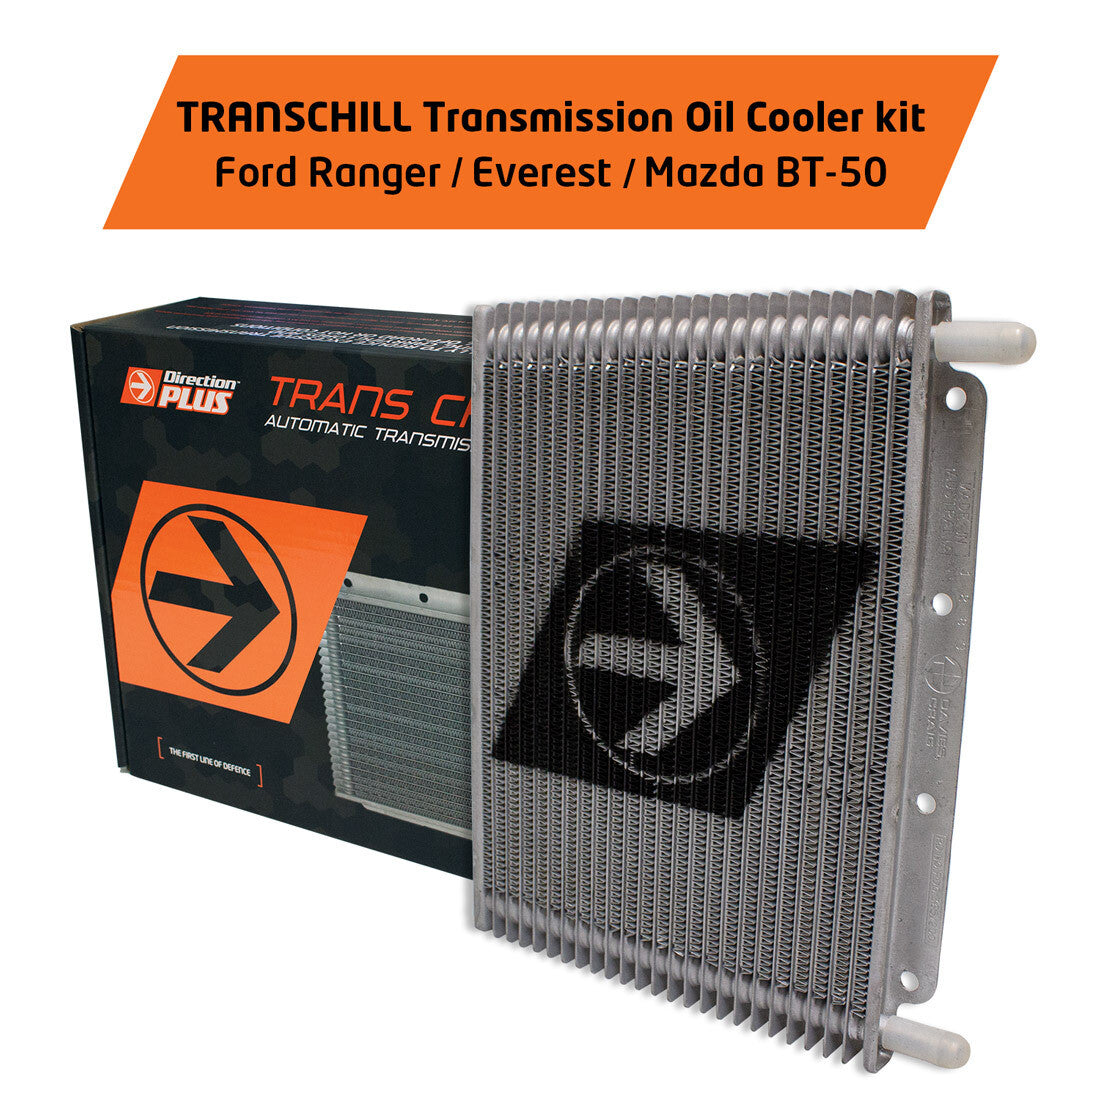 Transchill Transmission Cooler Kit - Ranger / Everest / BT-50